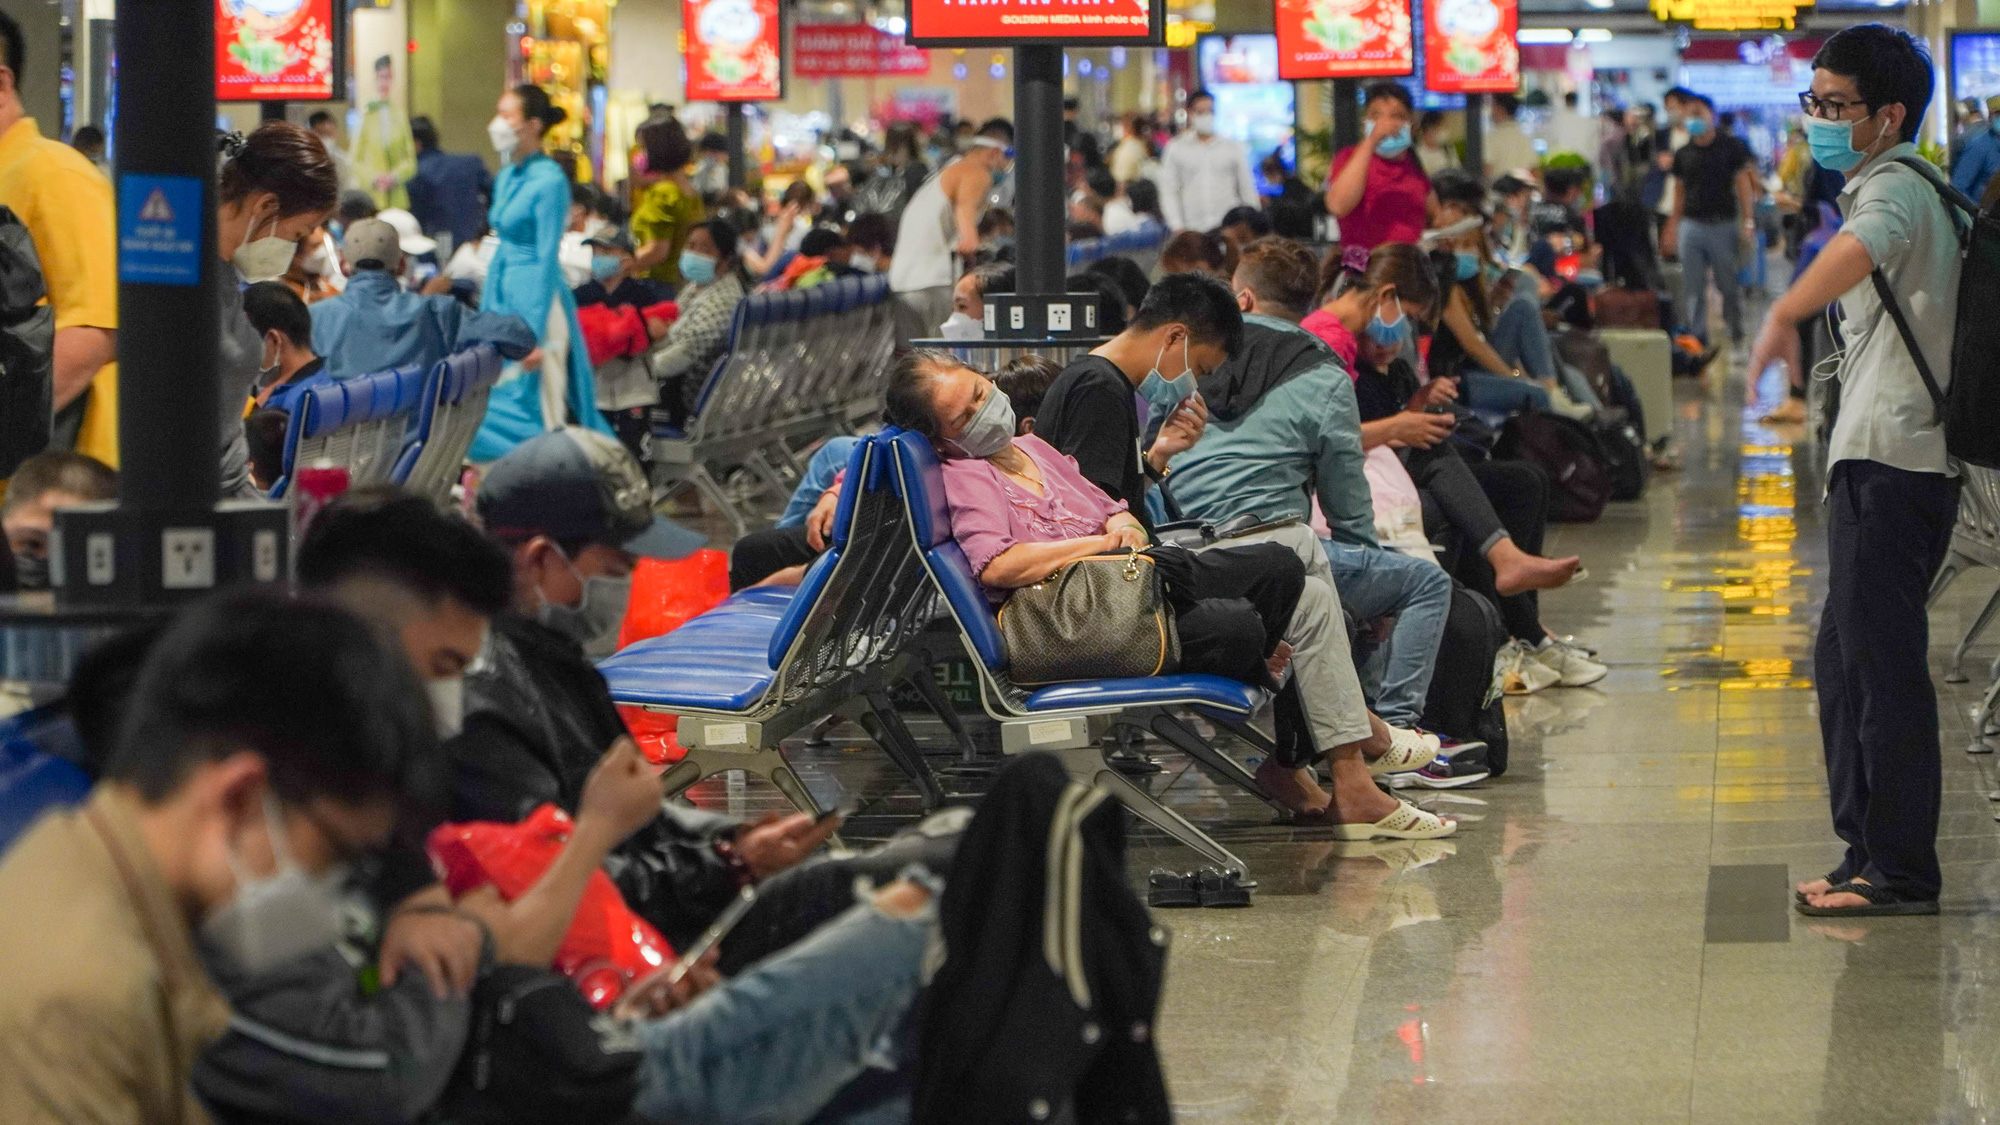 Sân bay Tân Sơn Nhất kín người về quê ăn Tết - Ảnh 12.